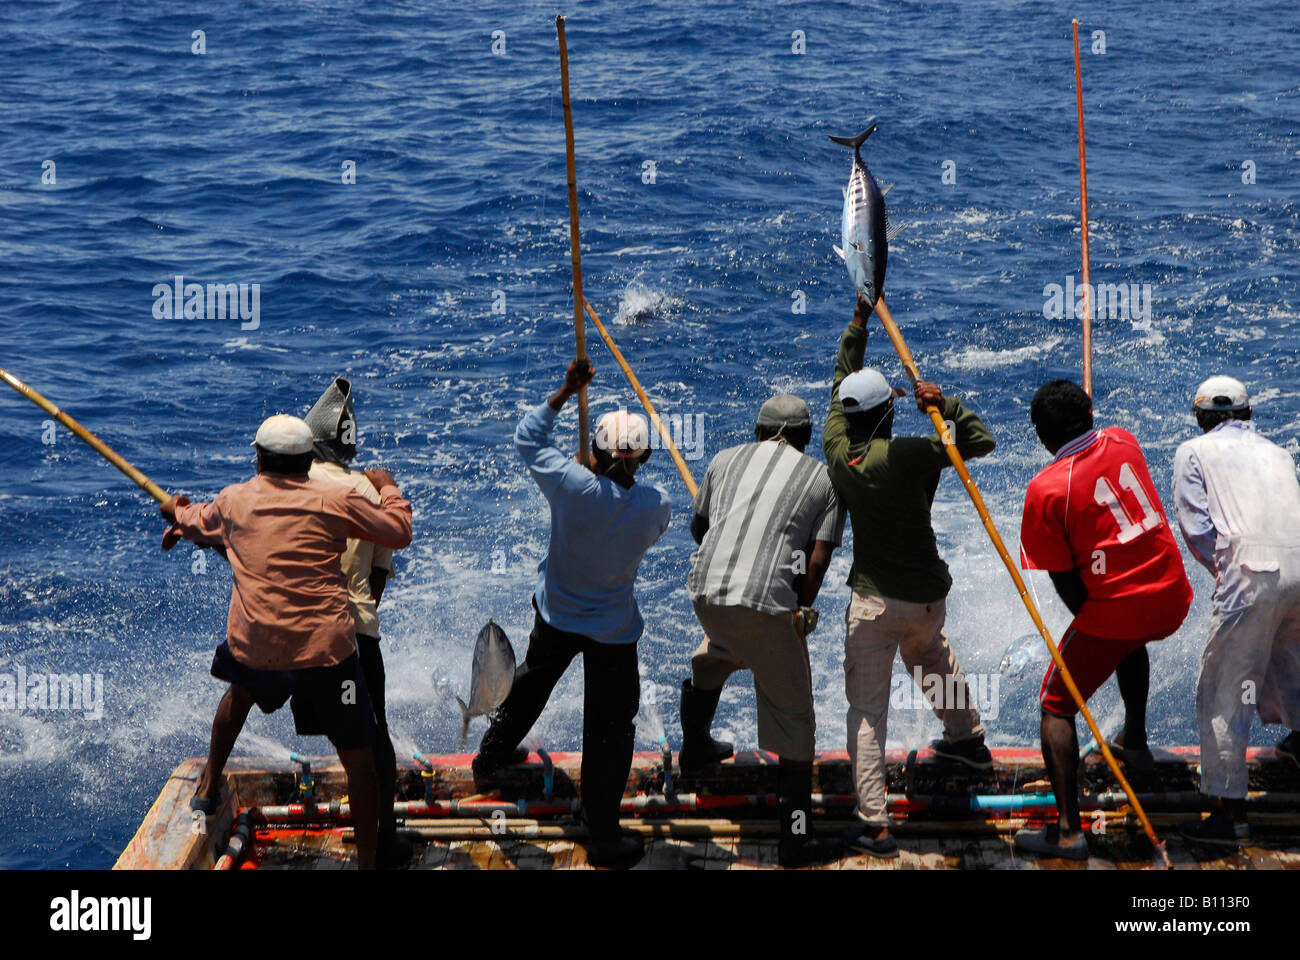 Les pêcheurs de thon avec canne à pêche traditionnelle des îles Maldives  Océan Indien Photo Stock - Alamy